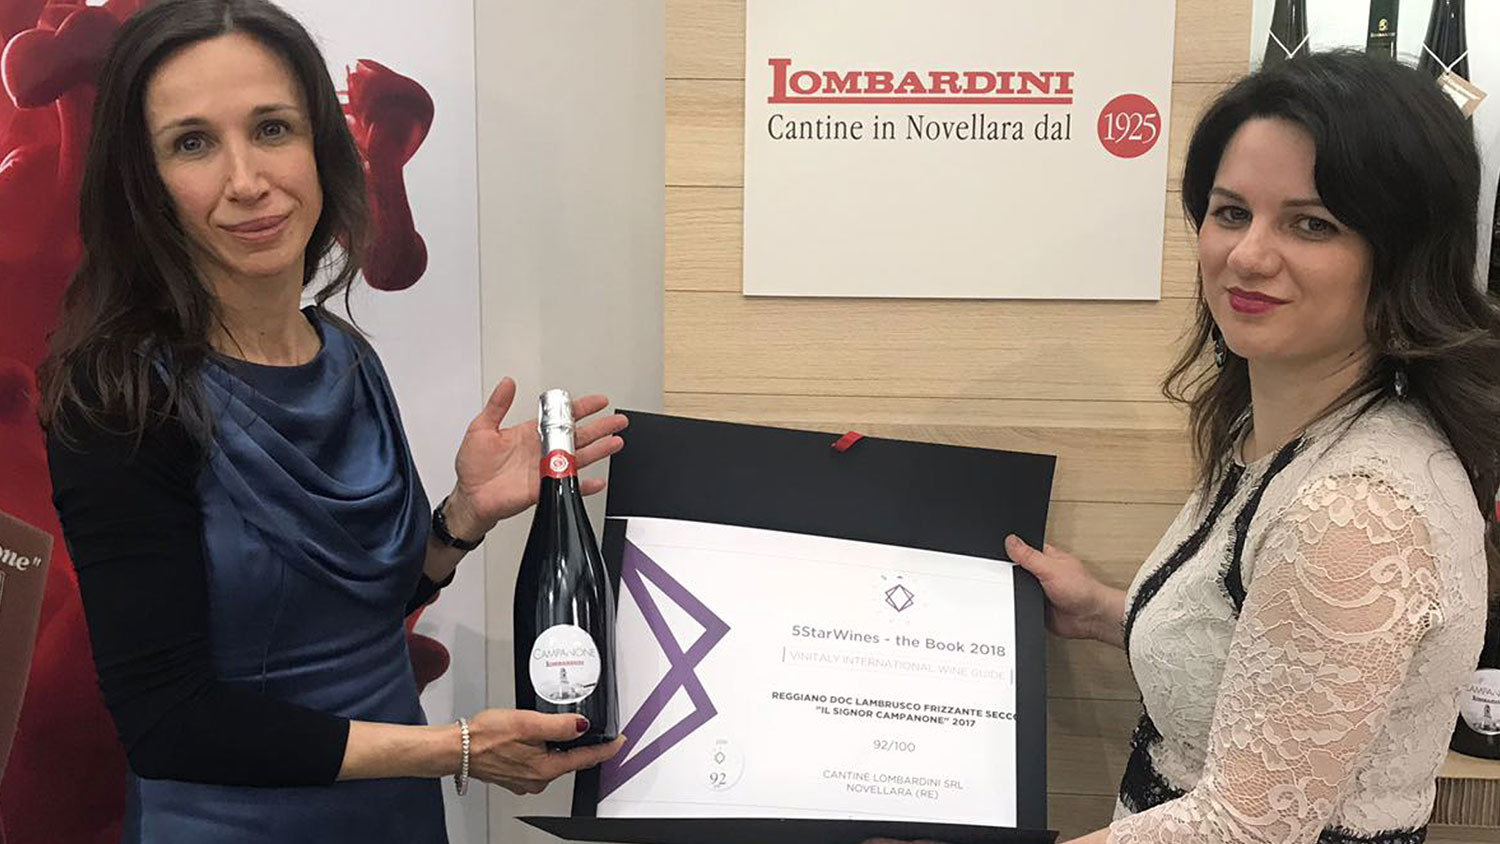 Il Signor Campanone nella guida "5 Star Wines 2018" di Vinitaly - Lombardini Vini